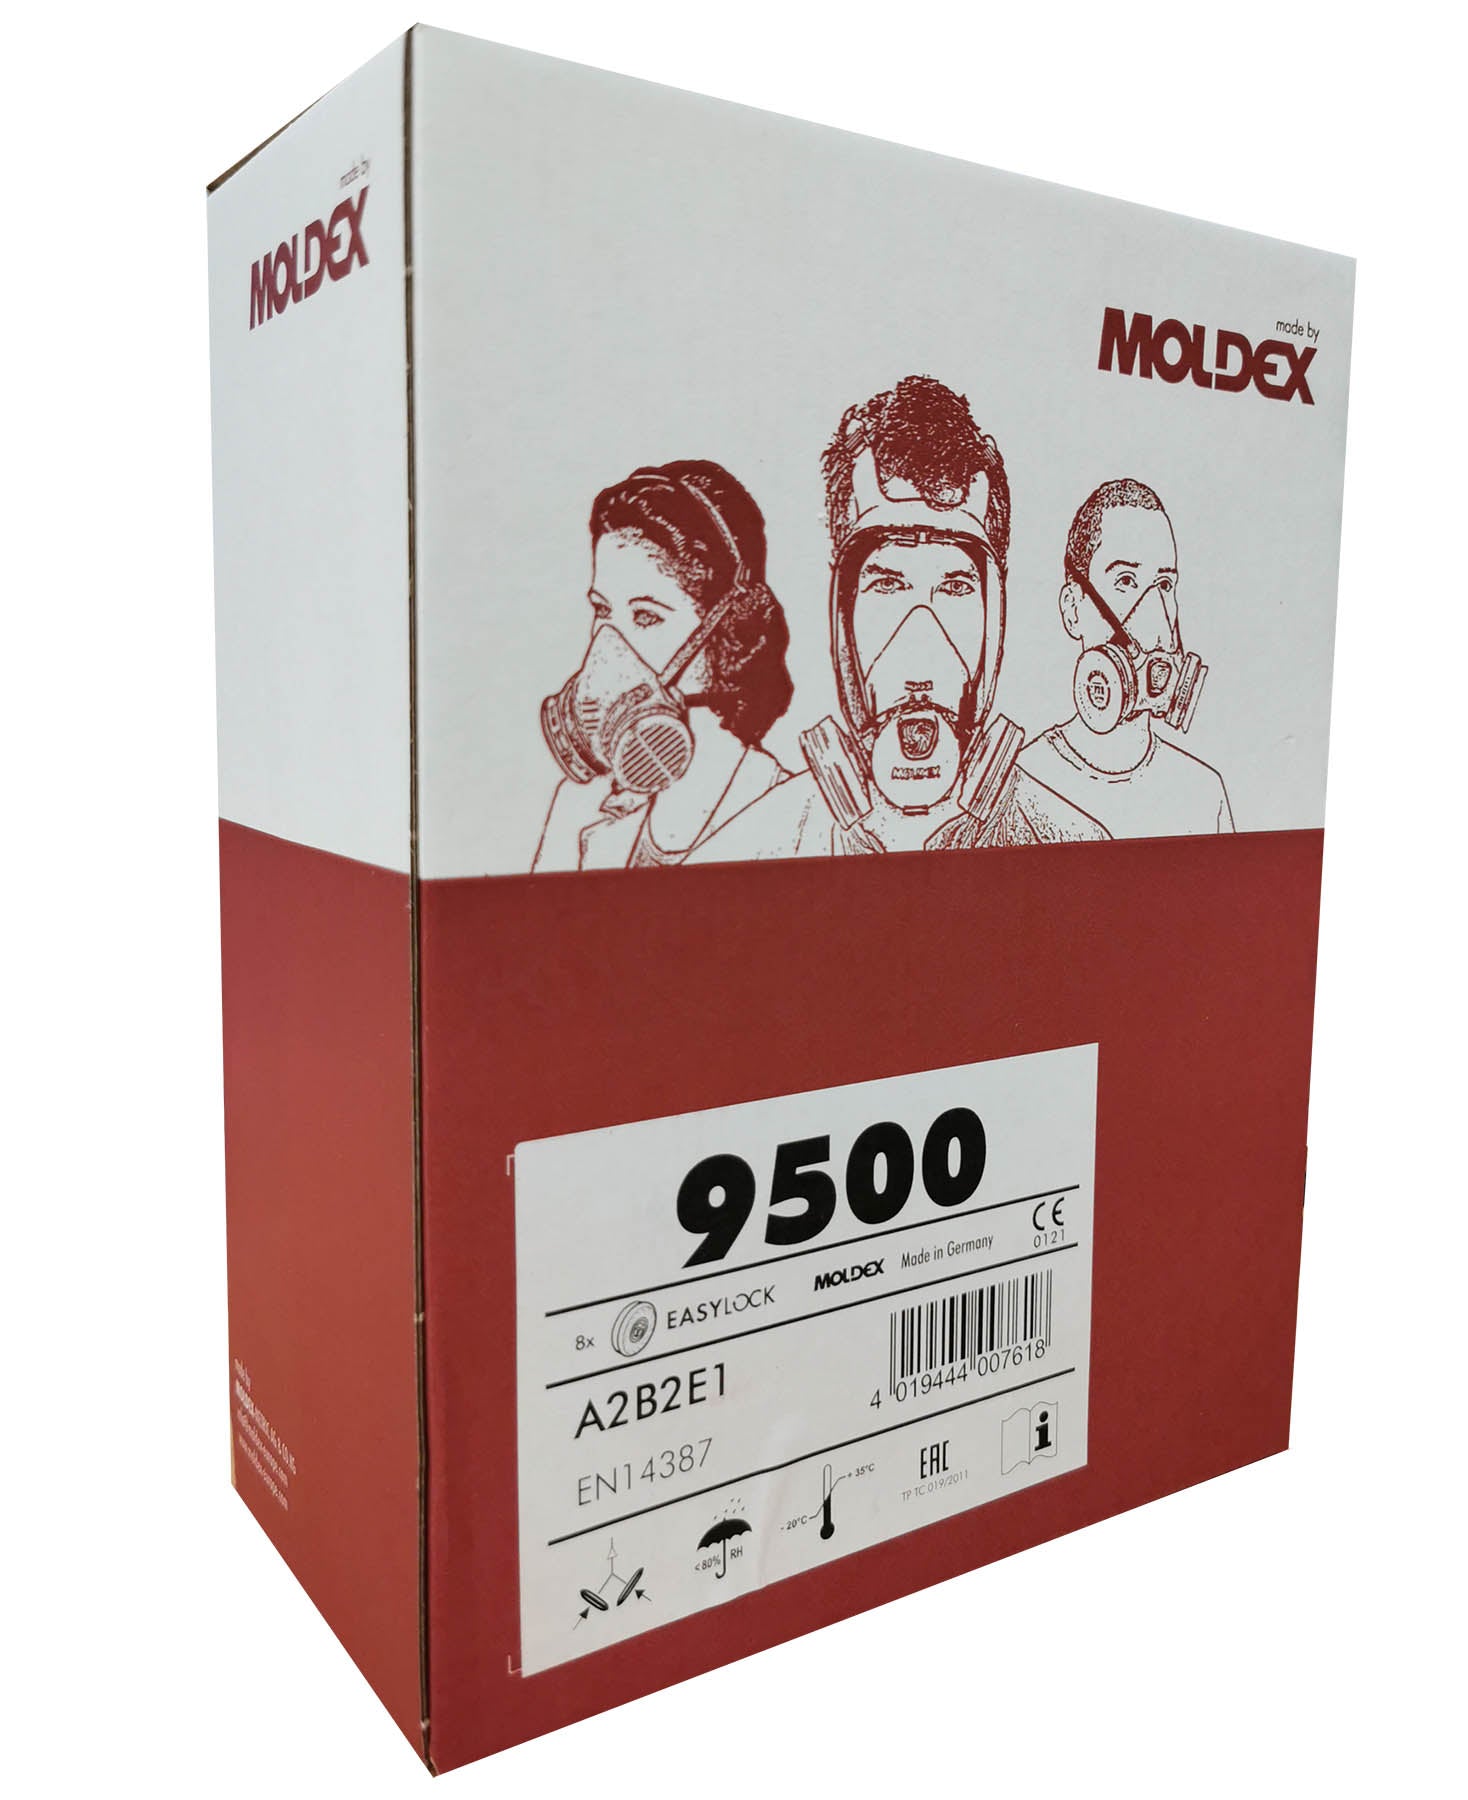 Moldex 9500 EasyLock A2B2E1 Gas Filters box